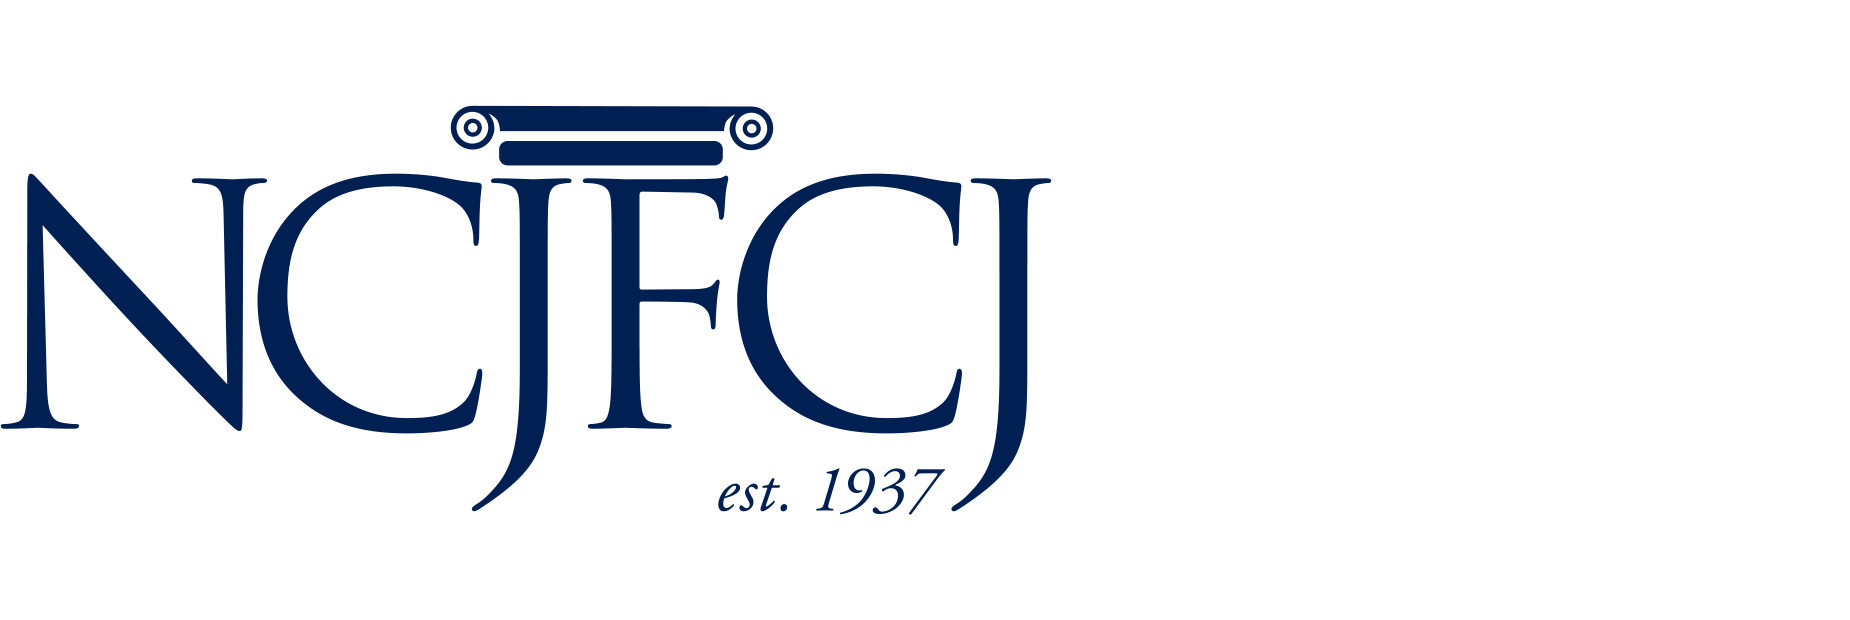 NCJFCJ logo, est. 1937